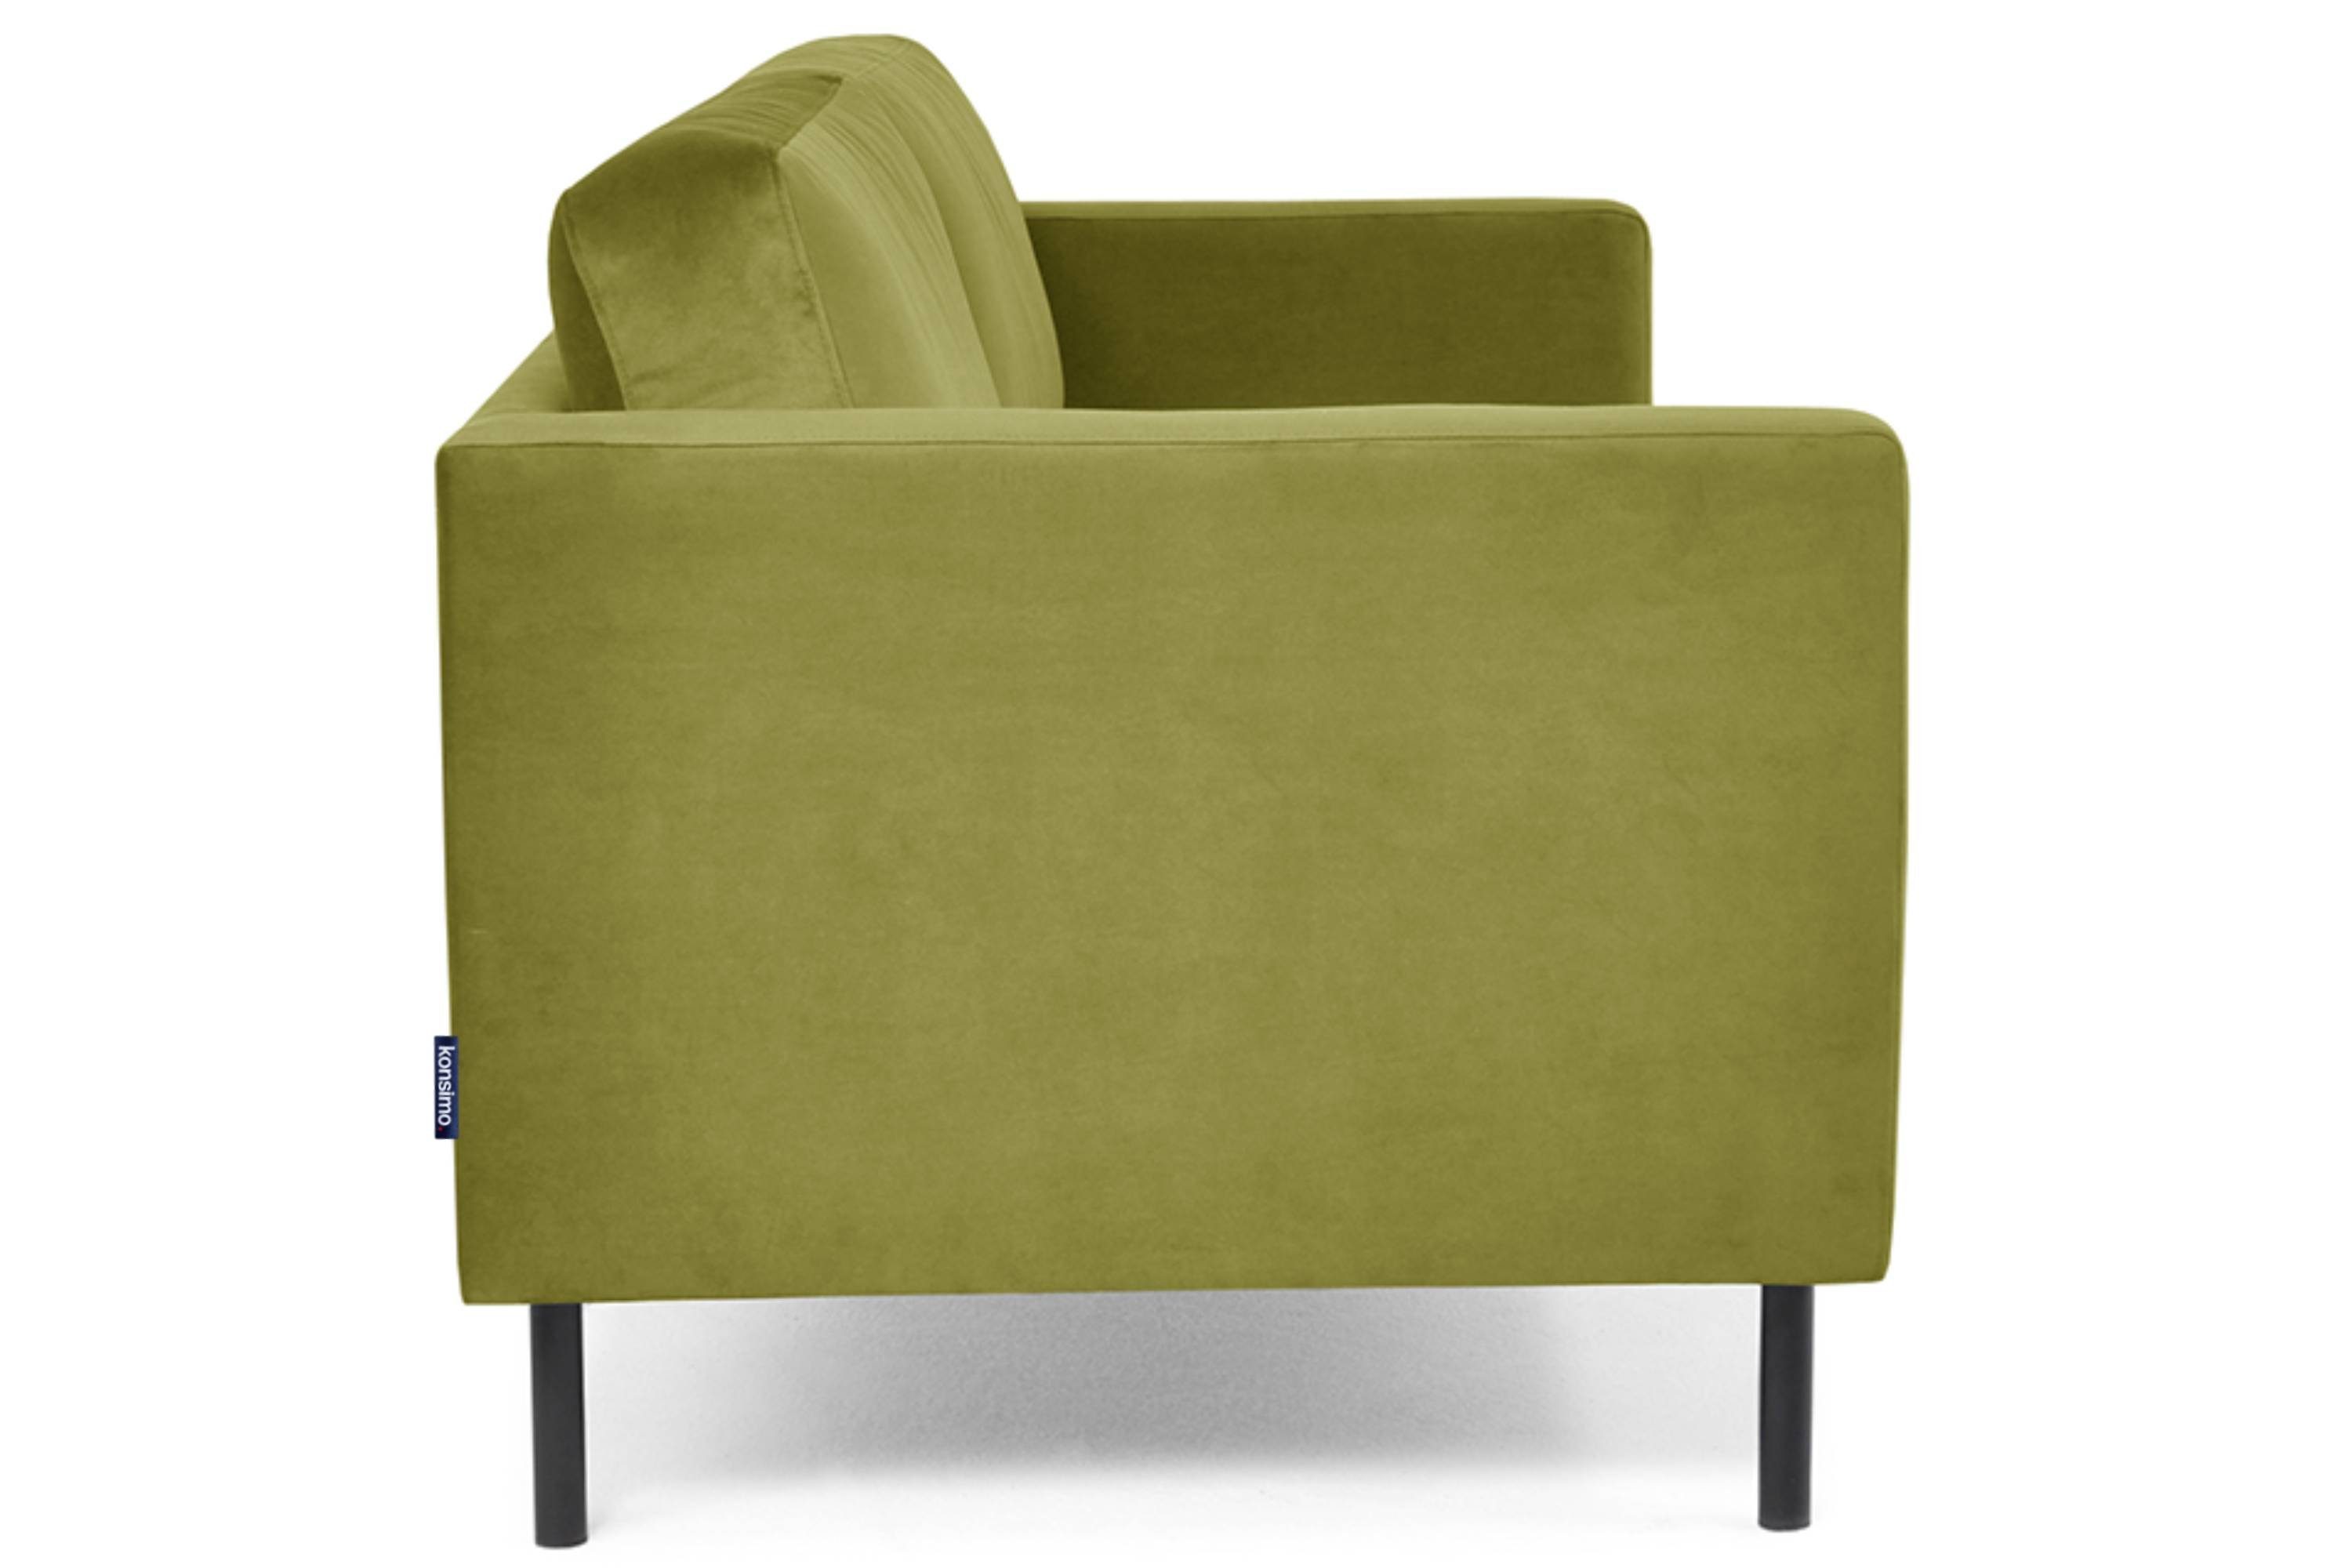 Konsimo 2-Sitzer TOZZI Sofa 2 | oliv hohe universelles oliv oliv Beine, Personen, Design 